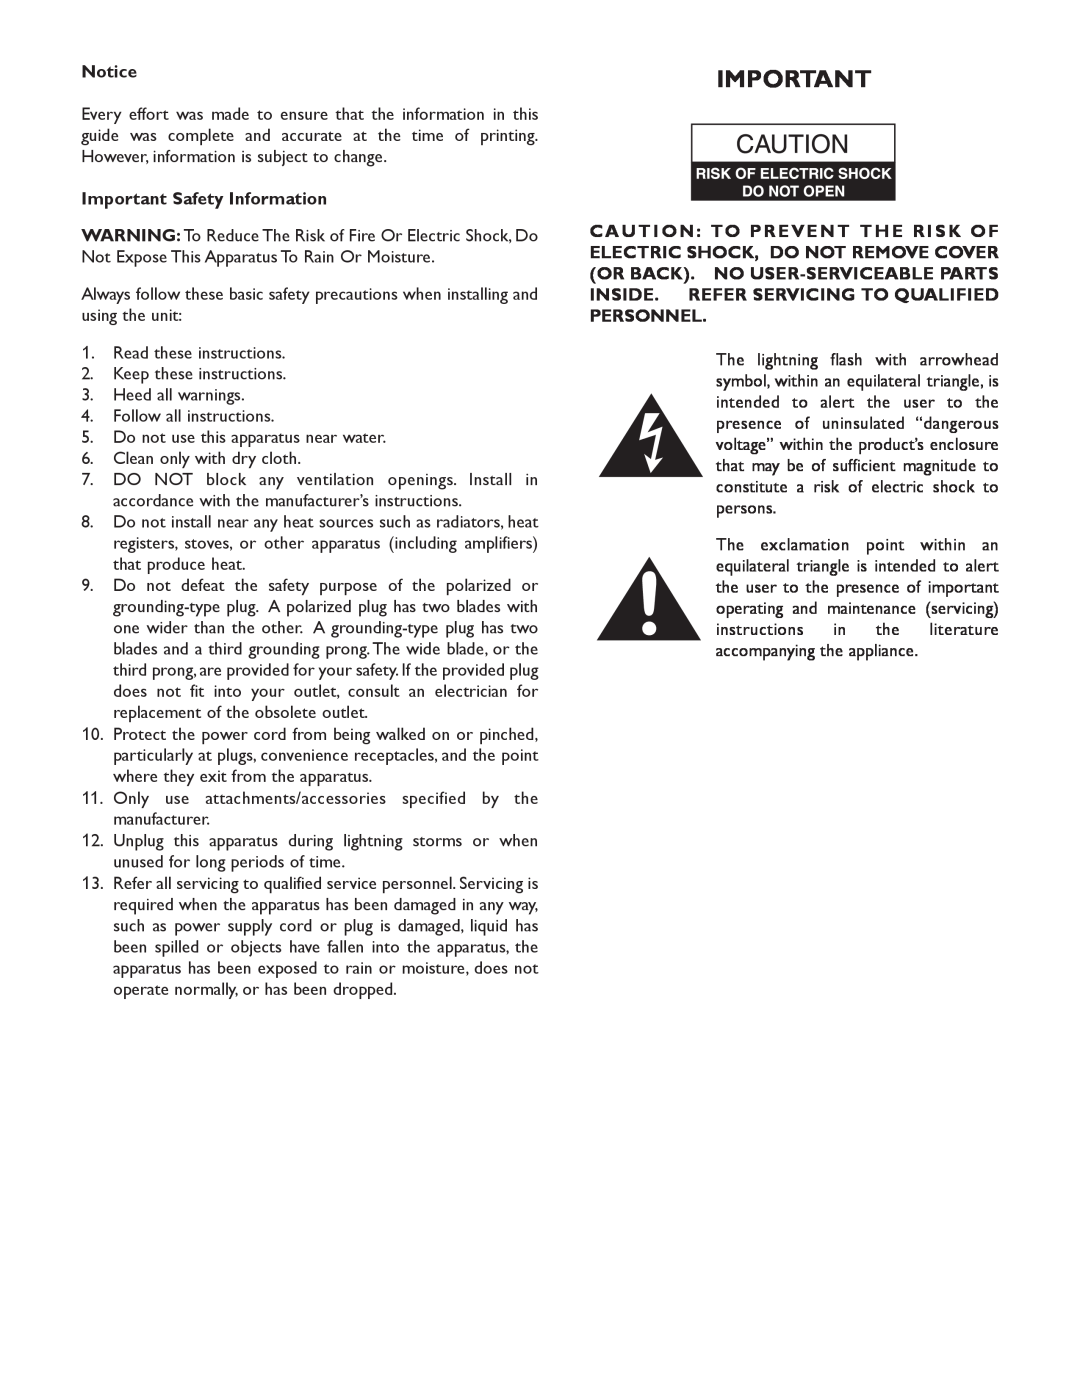 Bogen V100, V60, V150, V250 specifications Important Safety Information 